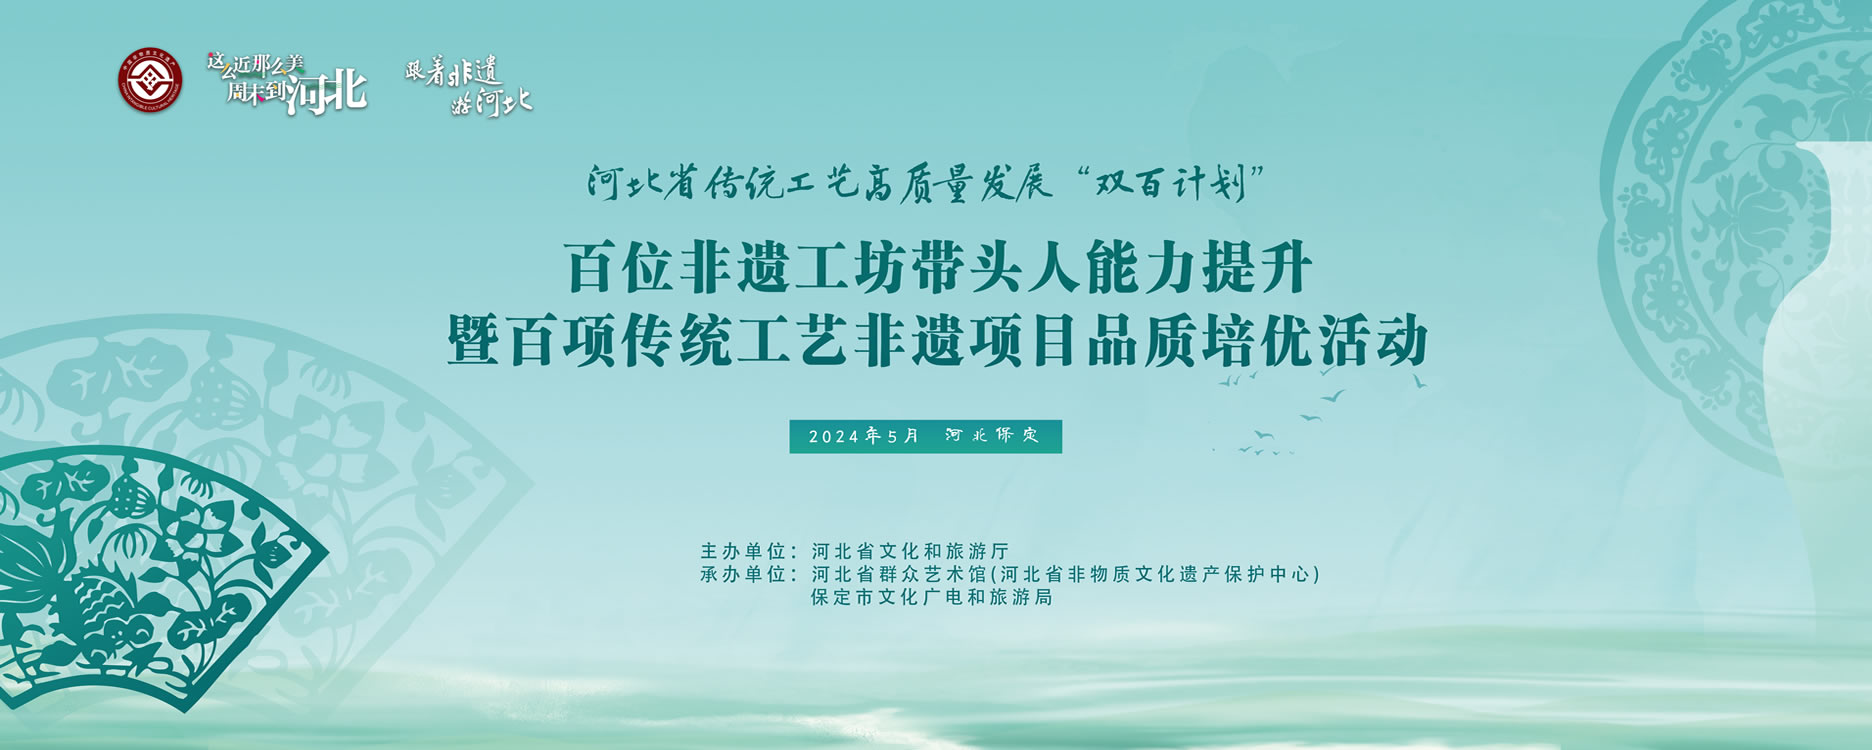 【专题】河北省传统工艺高质量发展“双百计划”提升培优活动